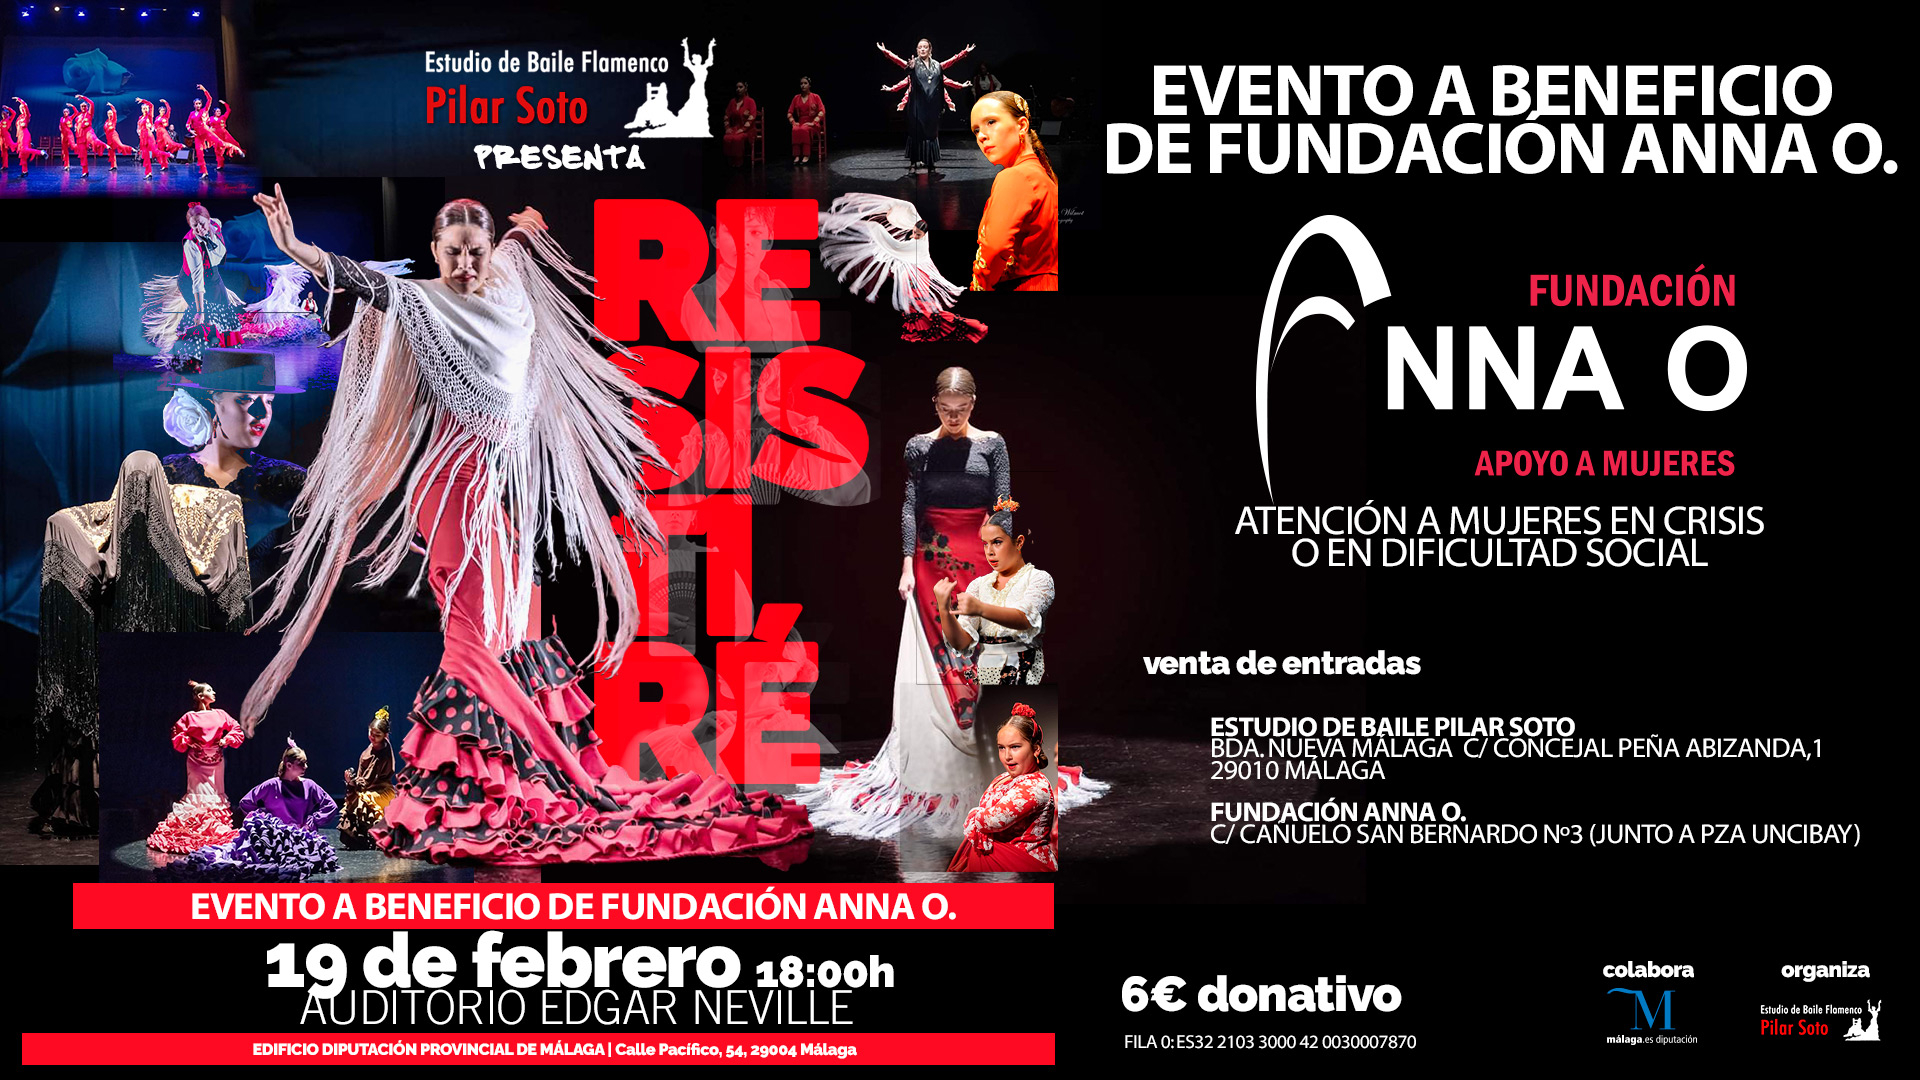 El Estudio de Baile Flamenco de Pilar Soto representará su espectáculo "Resistiré" el 19 de febrero a beneficio de Fundación Anna O.